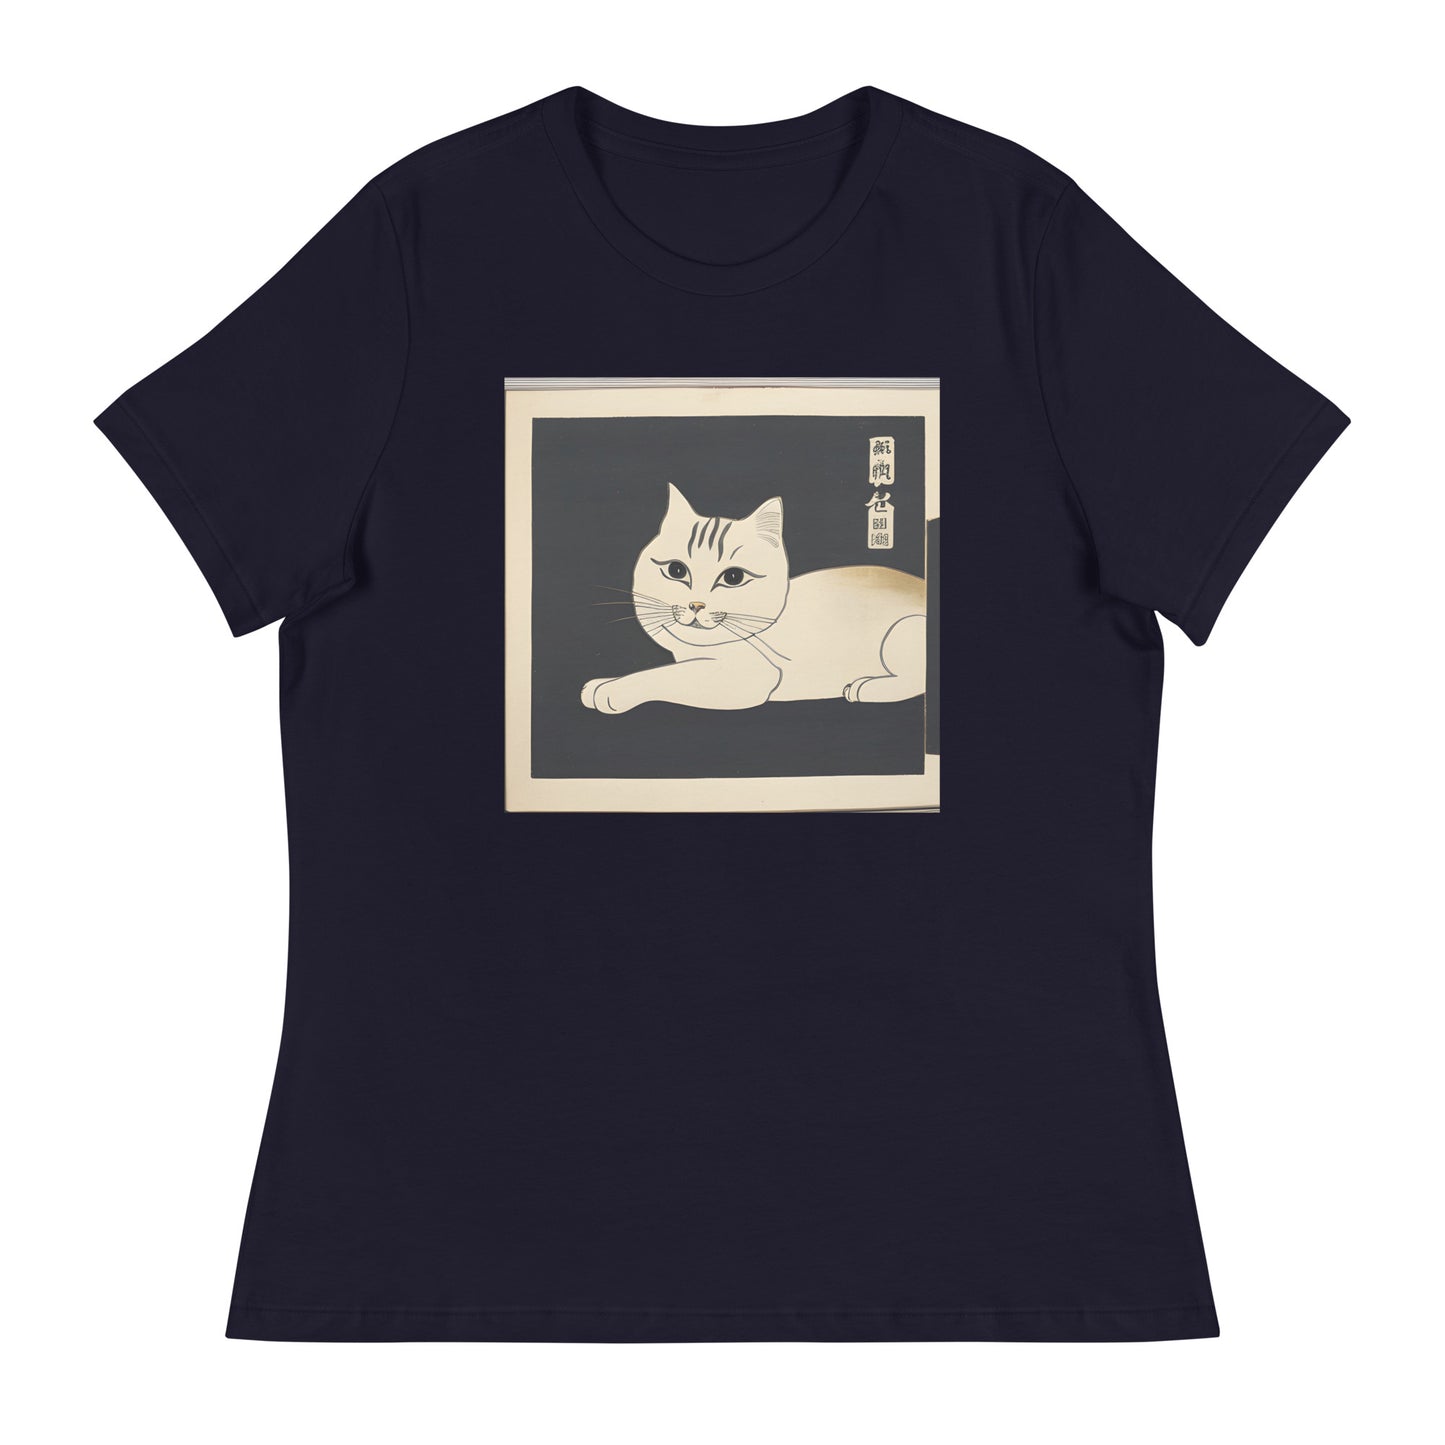 Meowsome Women's T-Shirt - 017